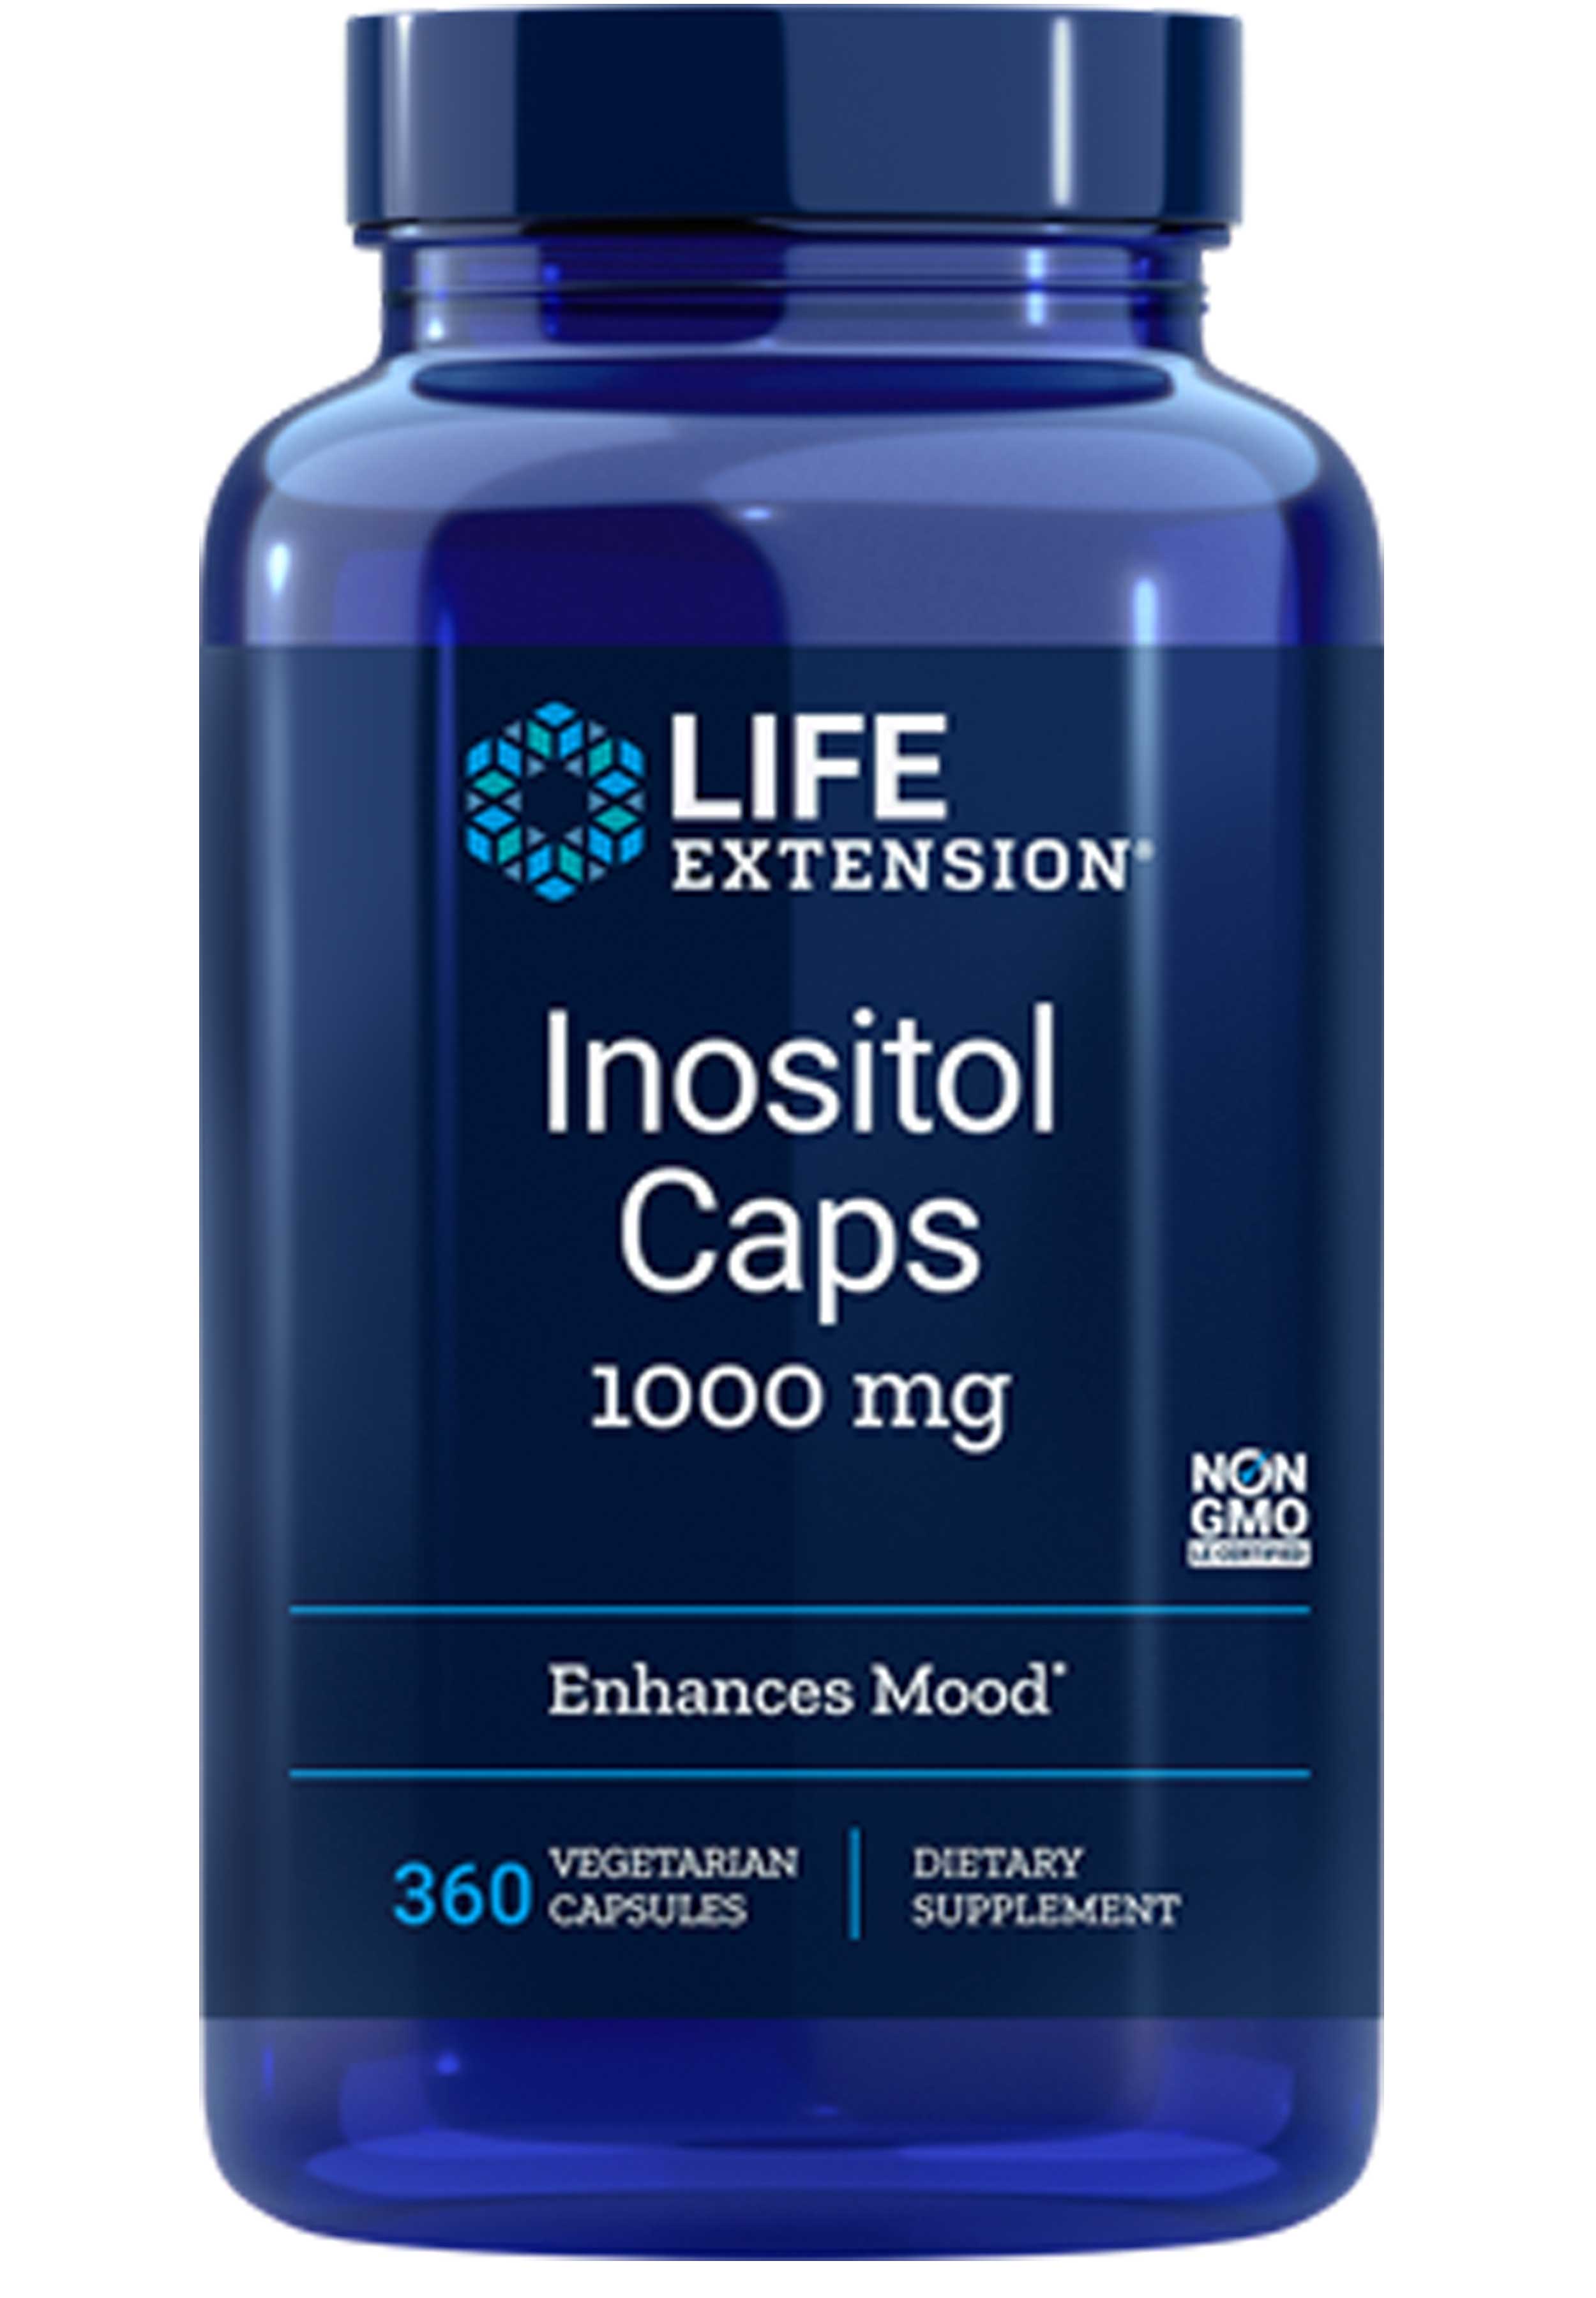 Life Extension Inositol Caps